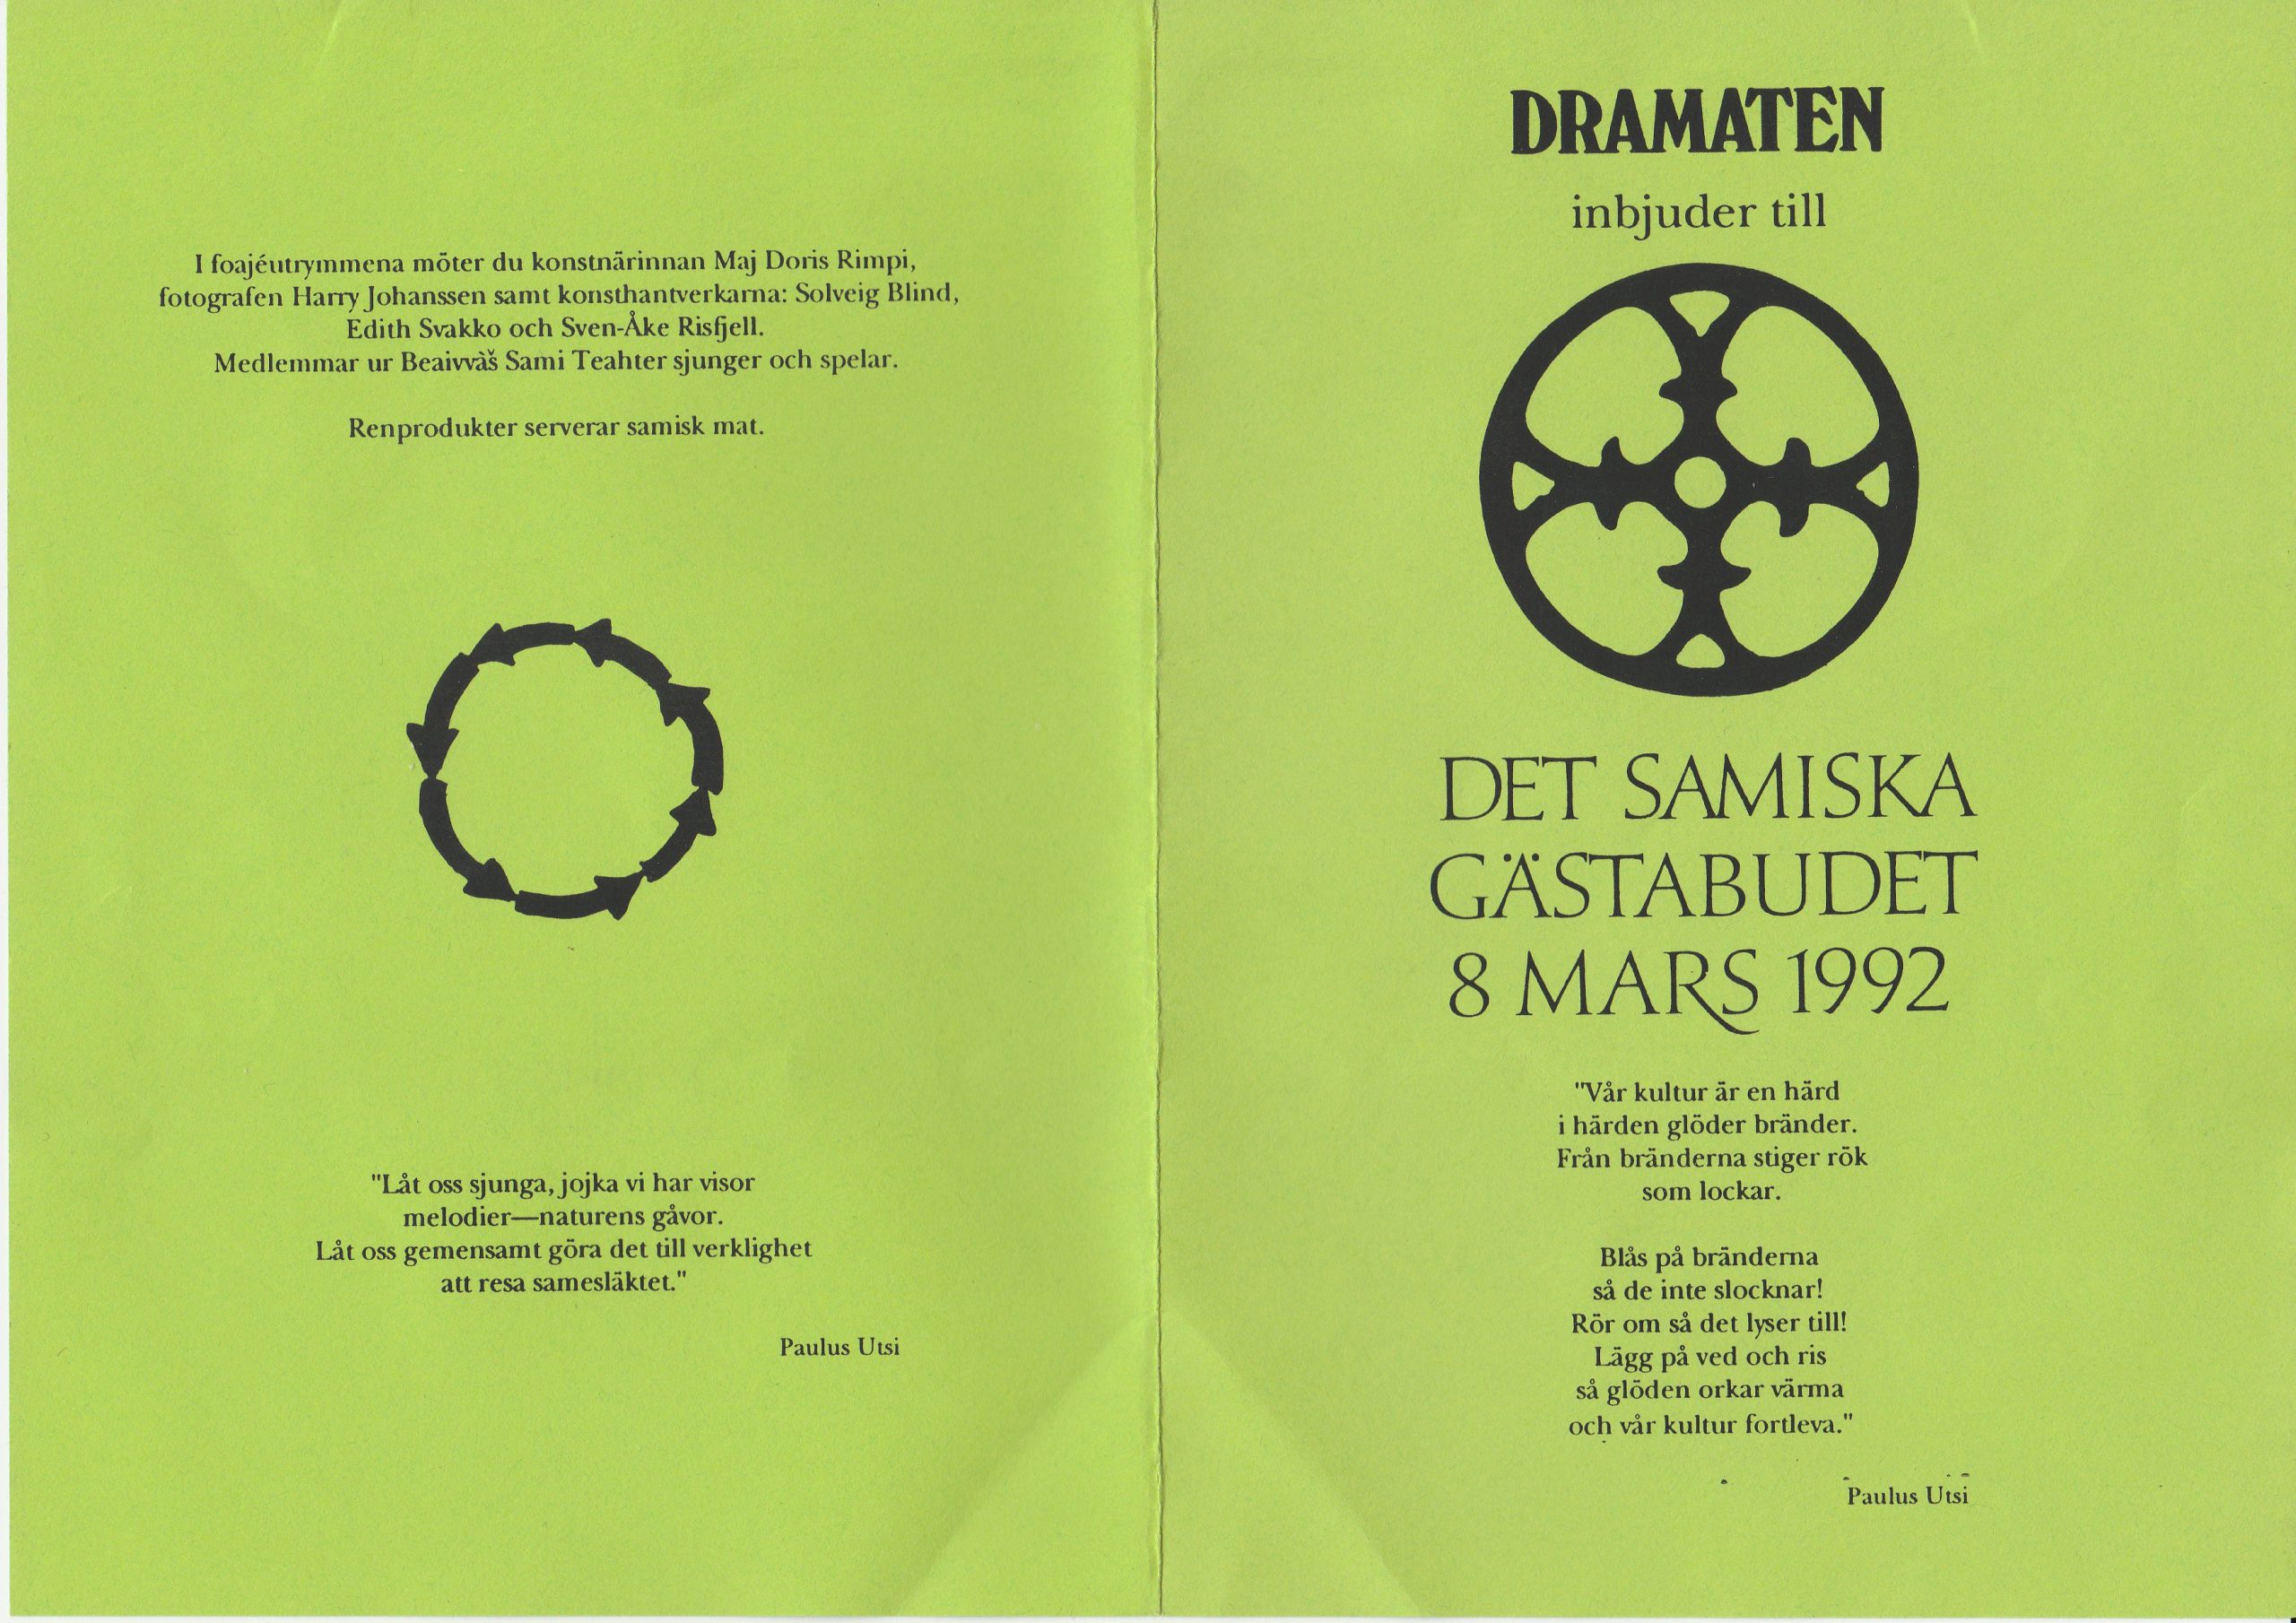 Programbladet för Samiska gästabudet på Dramaten 1992.